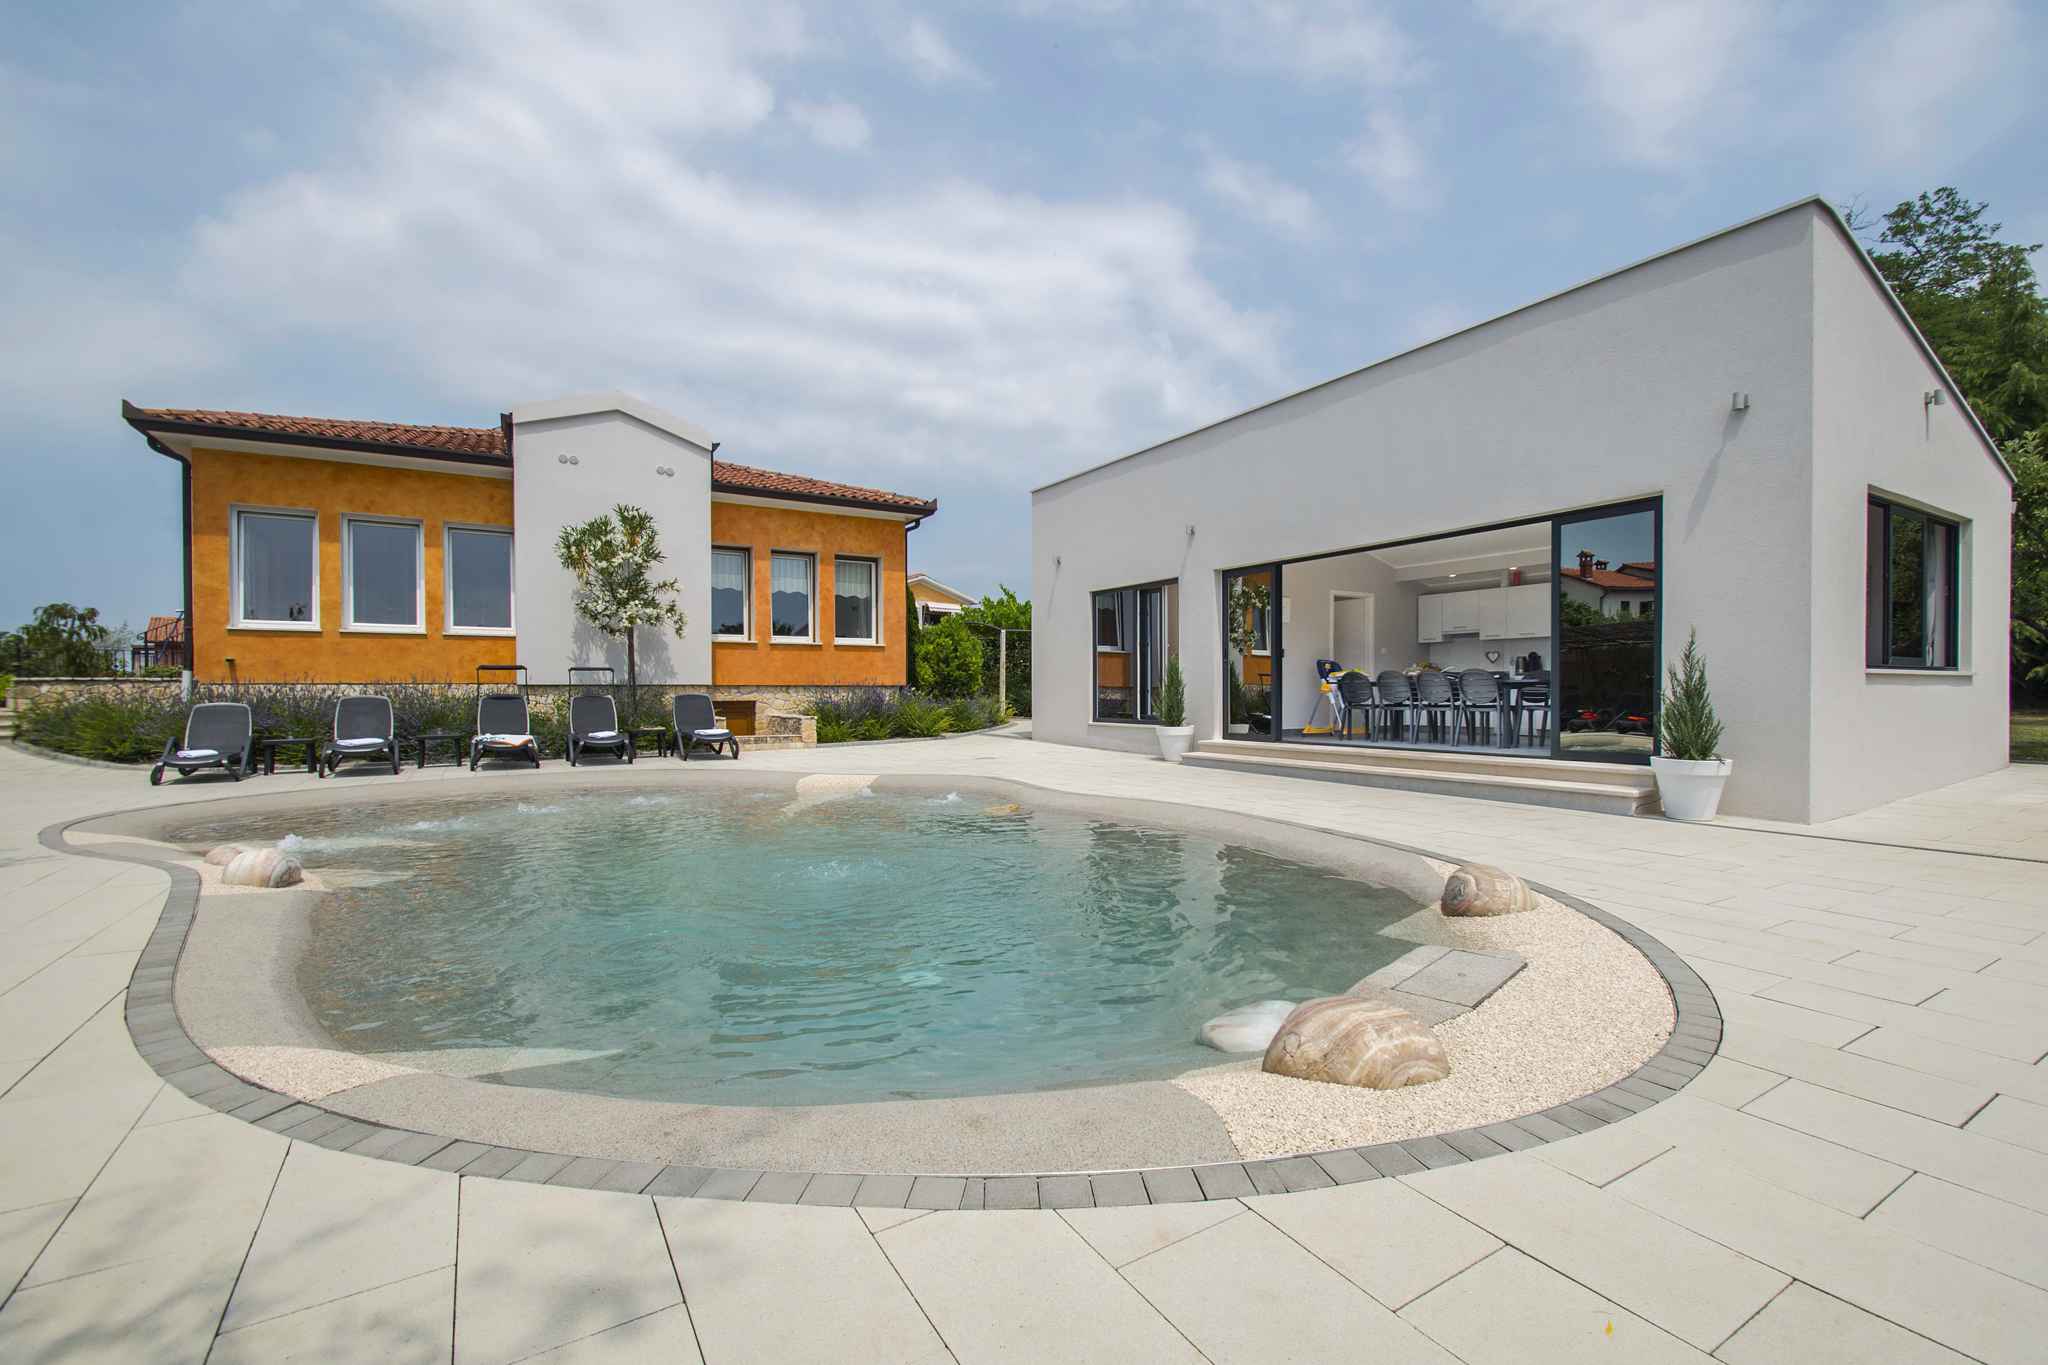 Villa mit Hydromassage-Pool und Kinderspielplatz Ferienhaus in Kroatien